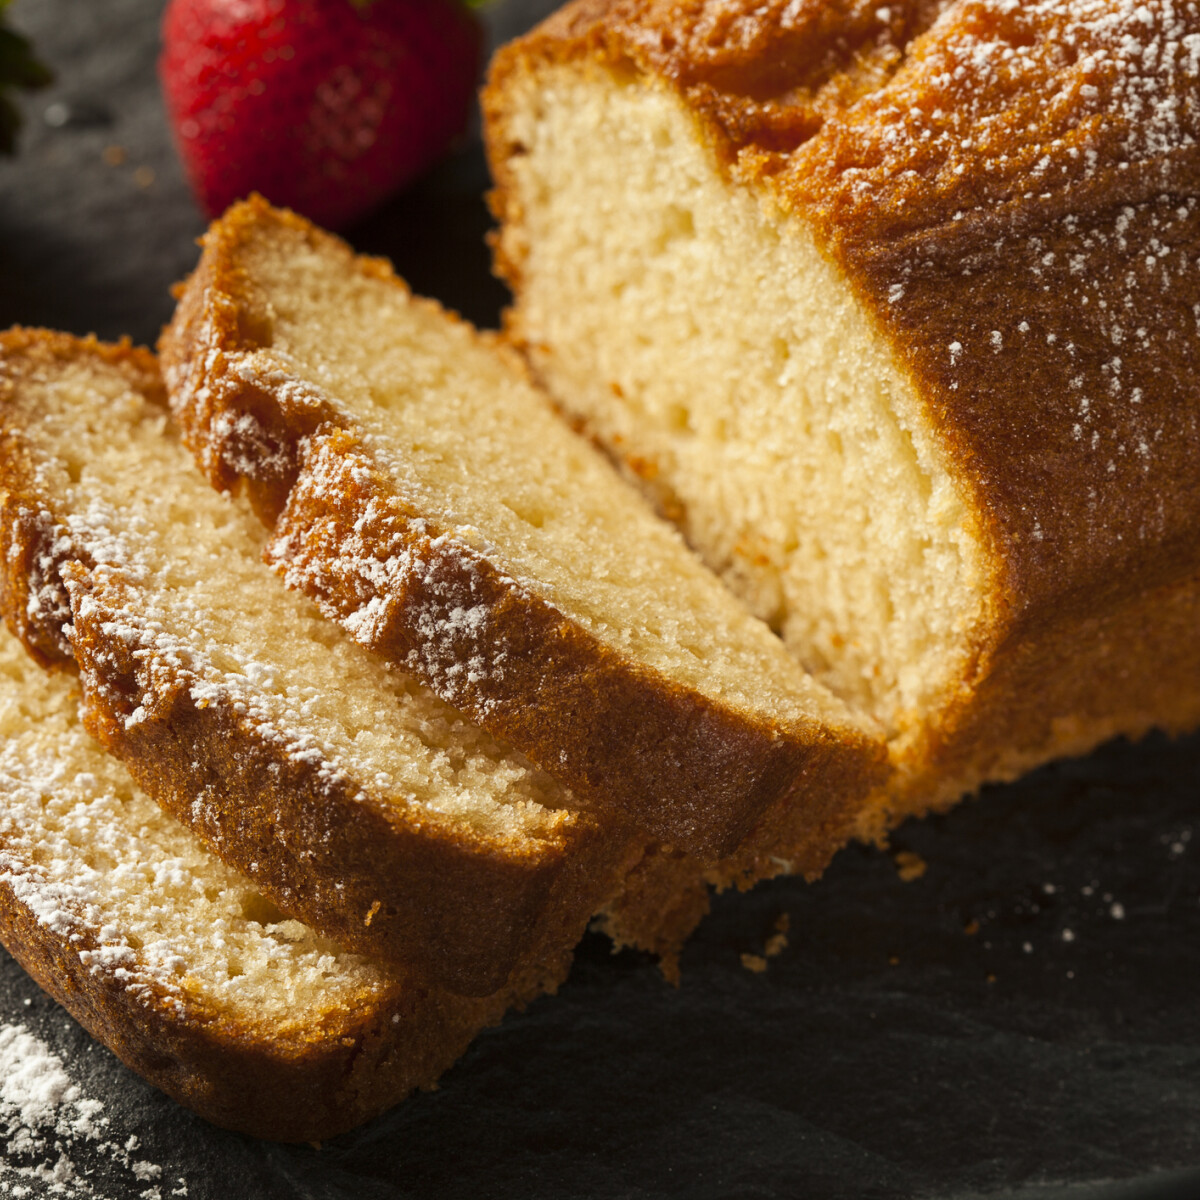 Élesztőt nemcsak kenyérbe, hanem süteménybe is tehetünk